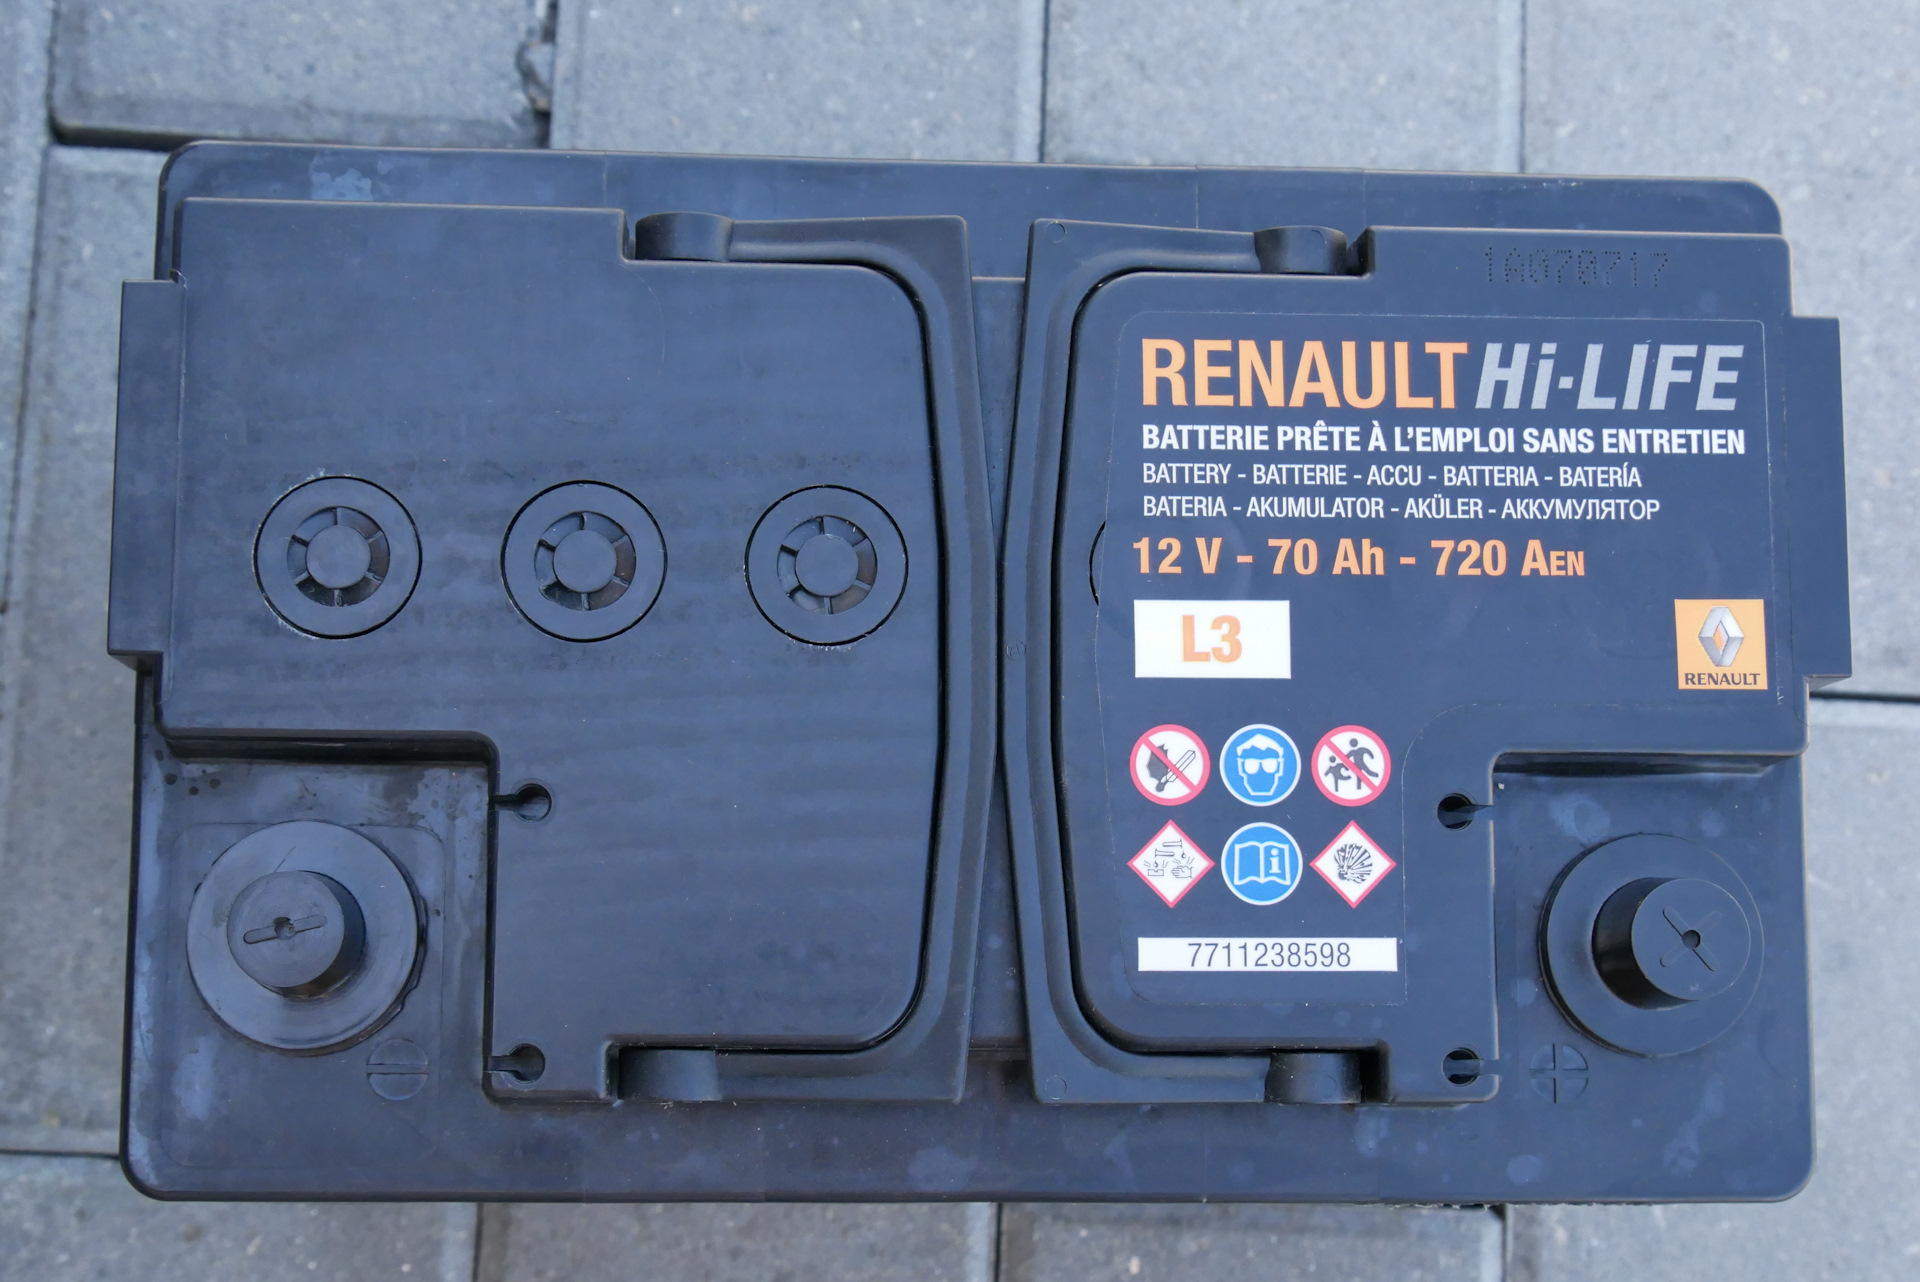 Аккумулятор дастер 2.0 какой. Аккумулятор Renault Hi-Life 12v 70ah. Штатный АКБ Рено Дастер. АКБ Дастер 2017. АКБ Дастер 1.3.